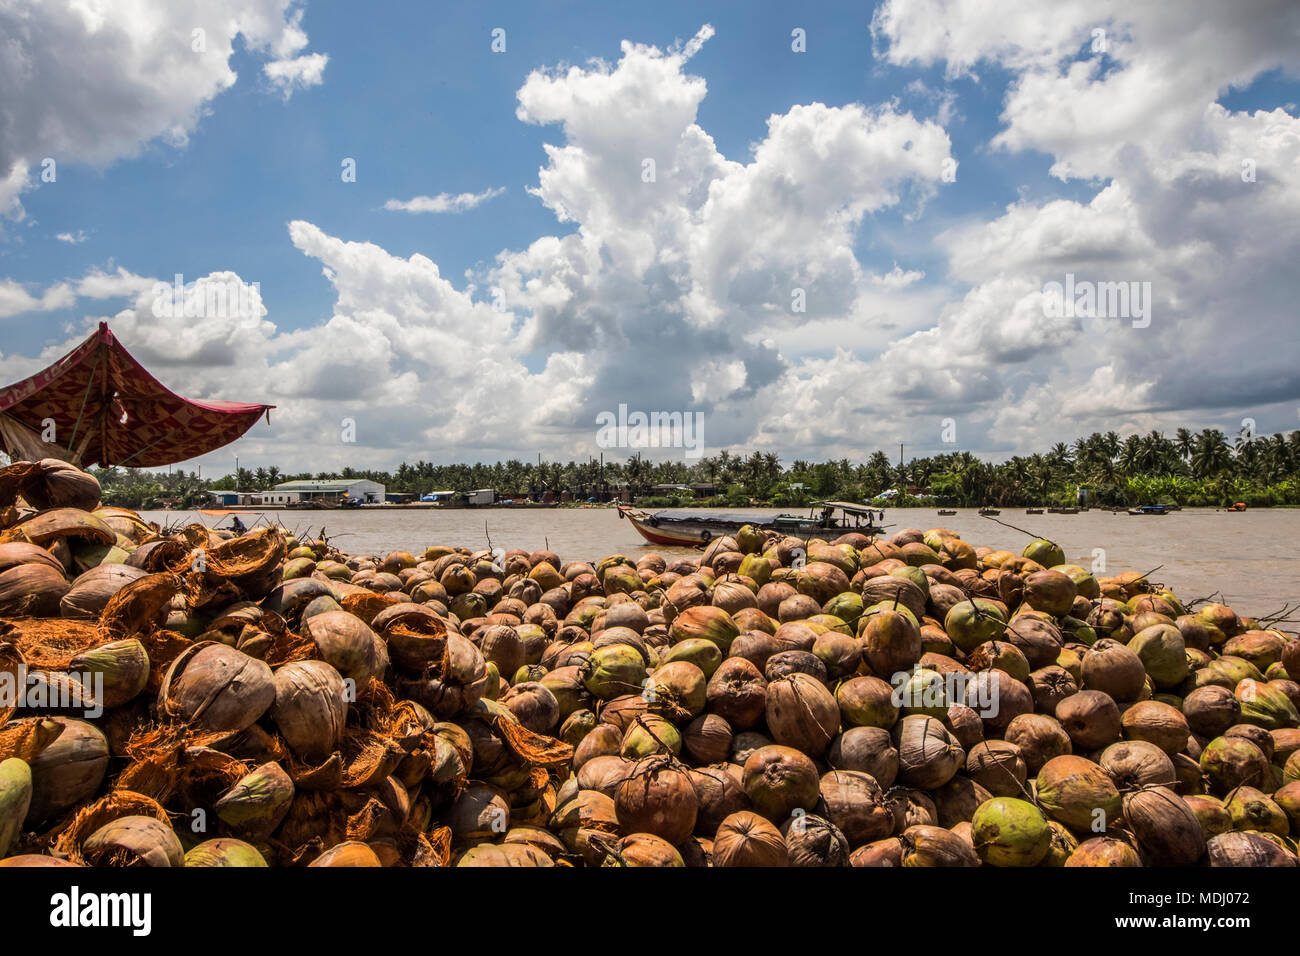 Coco lors d'une entreprise familiale de transformation de noix de coco dans le Delta du Mékong ; Ben Tre, Vietnam Banque D'Images